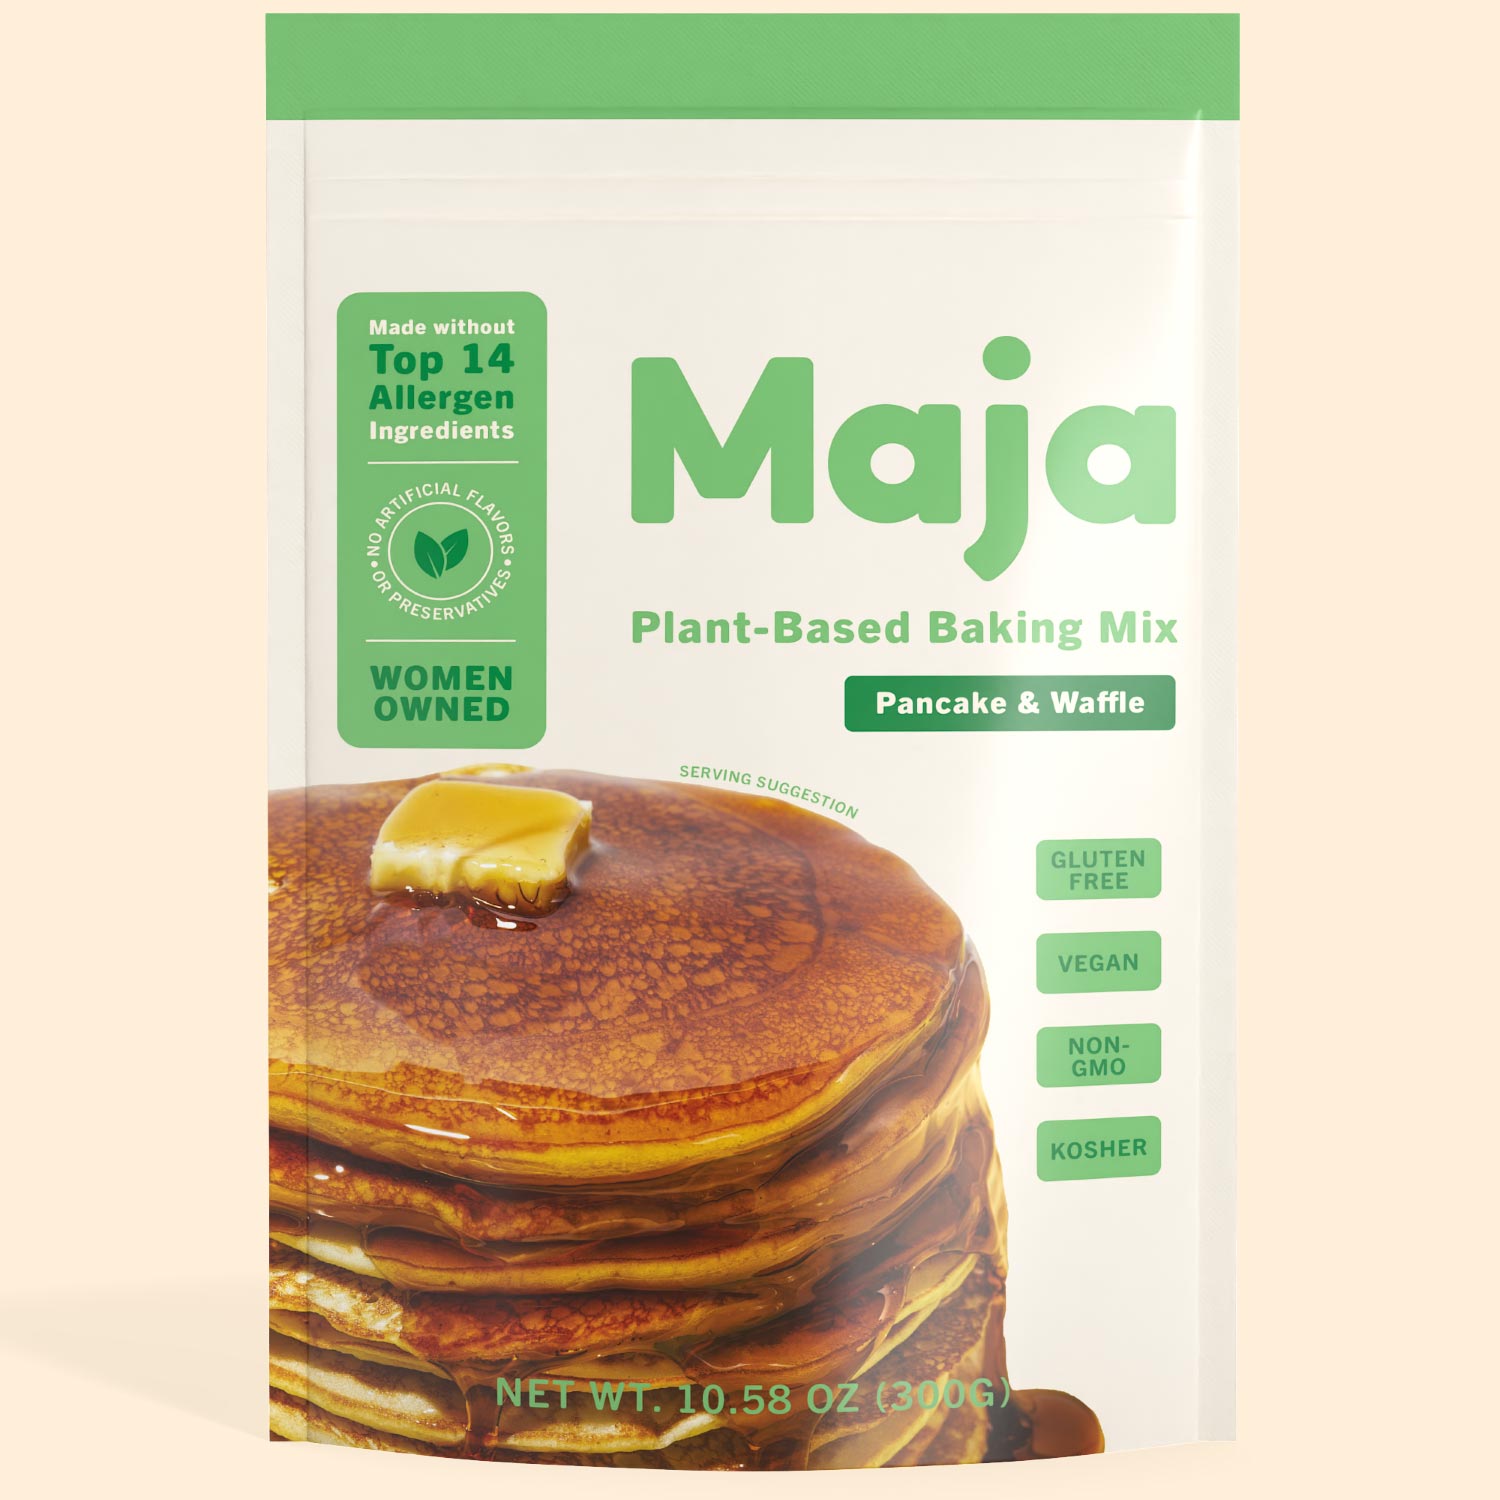 Gluten Free Waffles and Gluten Free Pancake Mix | Maja